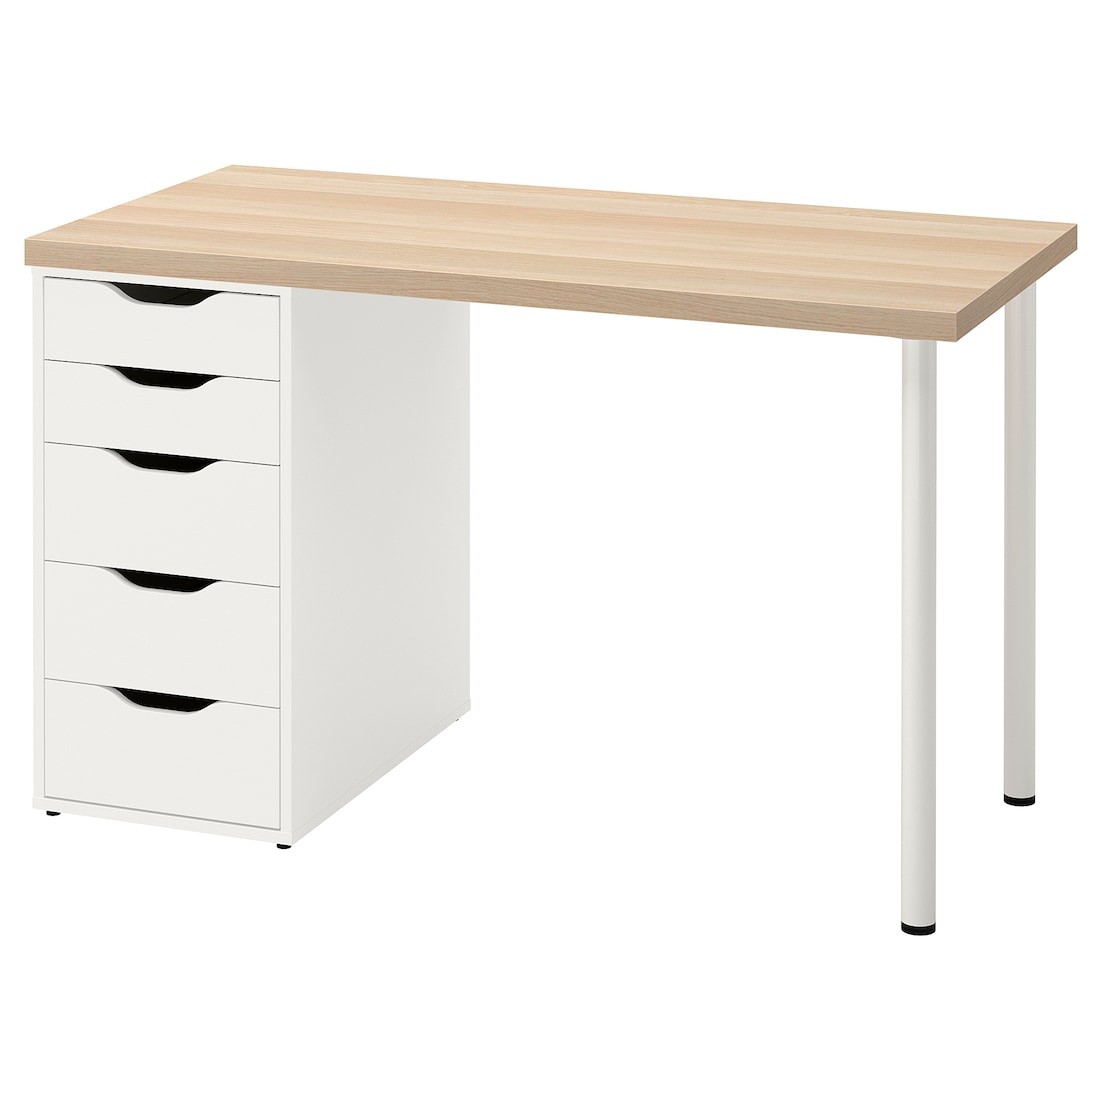 IKEA LAGKAPTEN ЛАГКАПТЕН / ALEX АЛЕКС Письменный стол, под беленый дуб / белый, 120x60 см 09416962 094.169.62